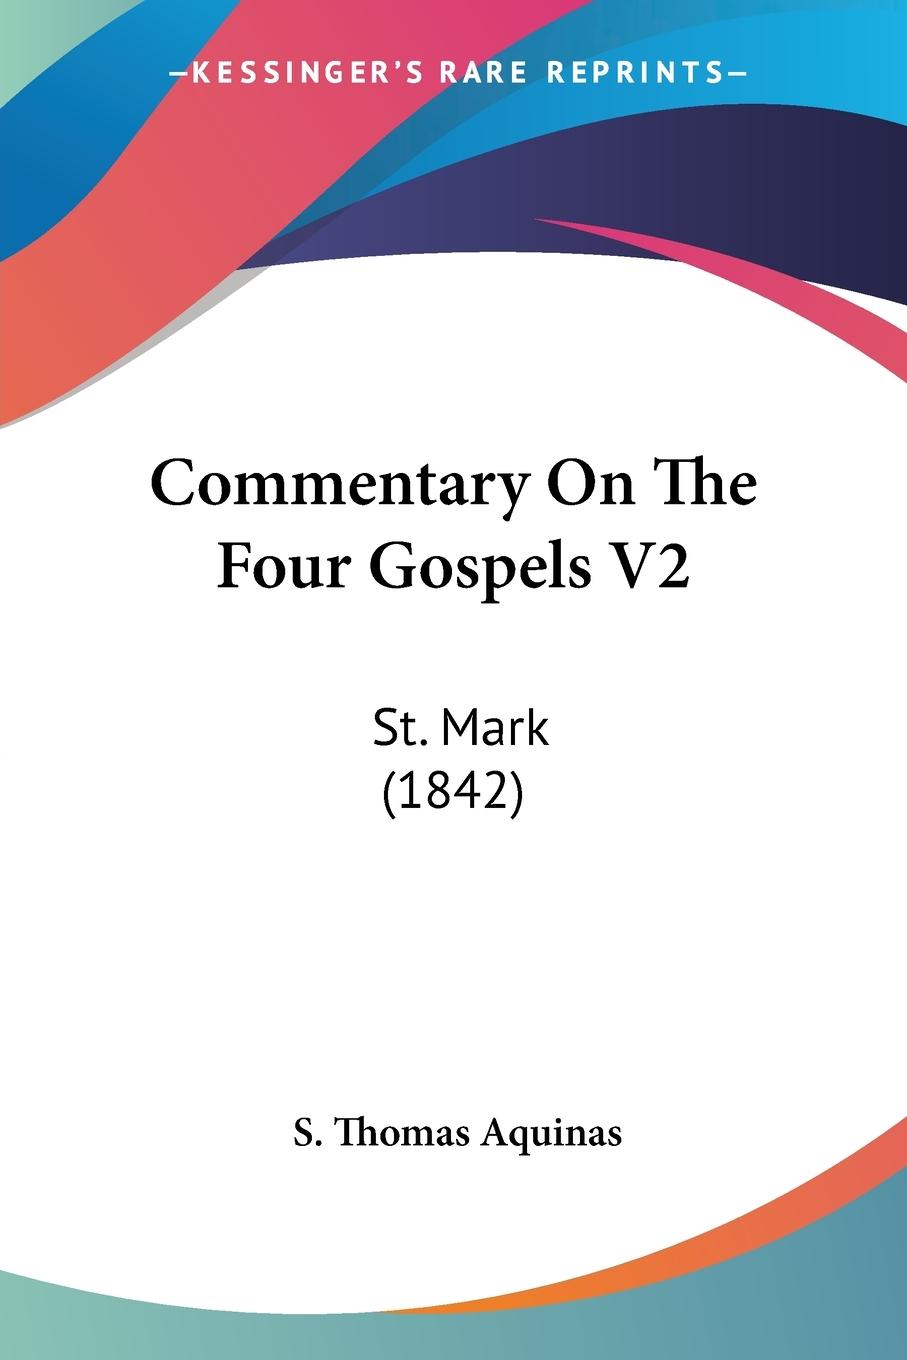 Commentary On The Four Gospels V2 - Aquinas, S. Thomas